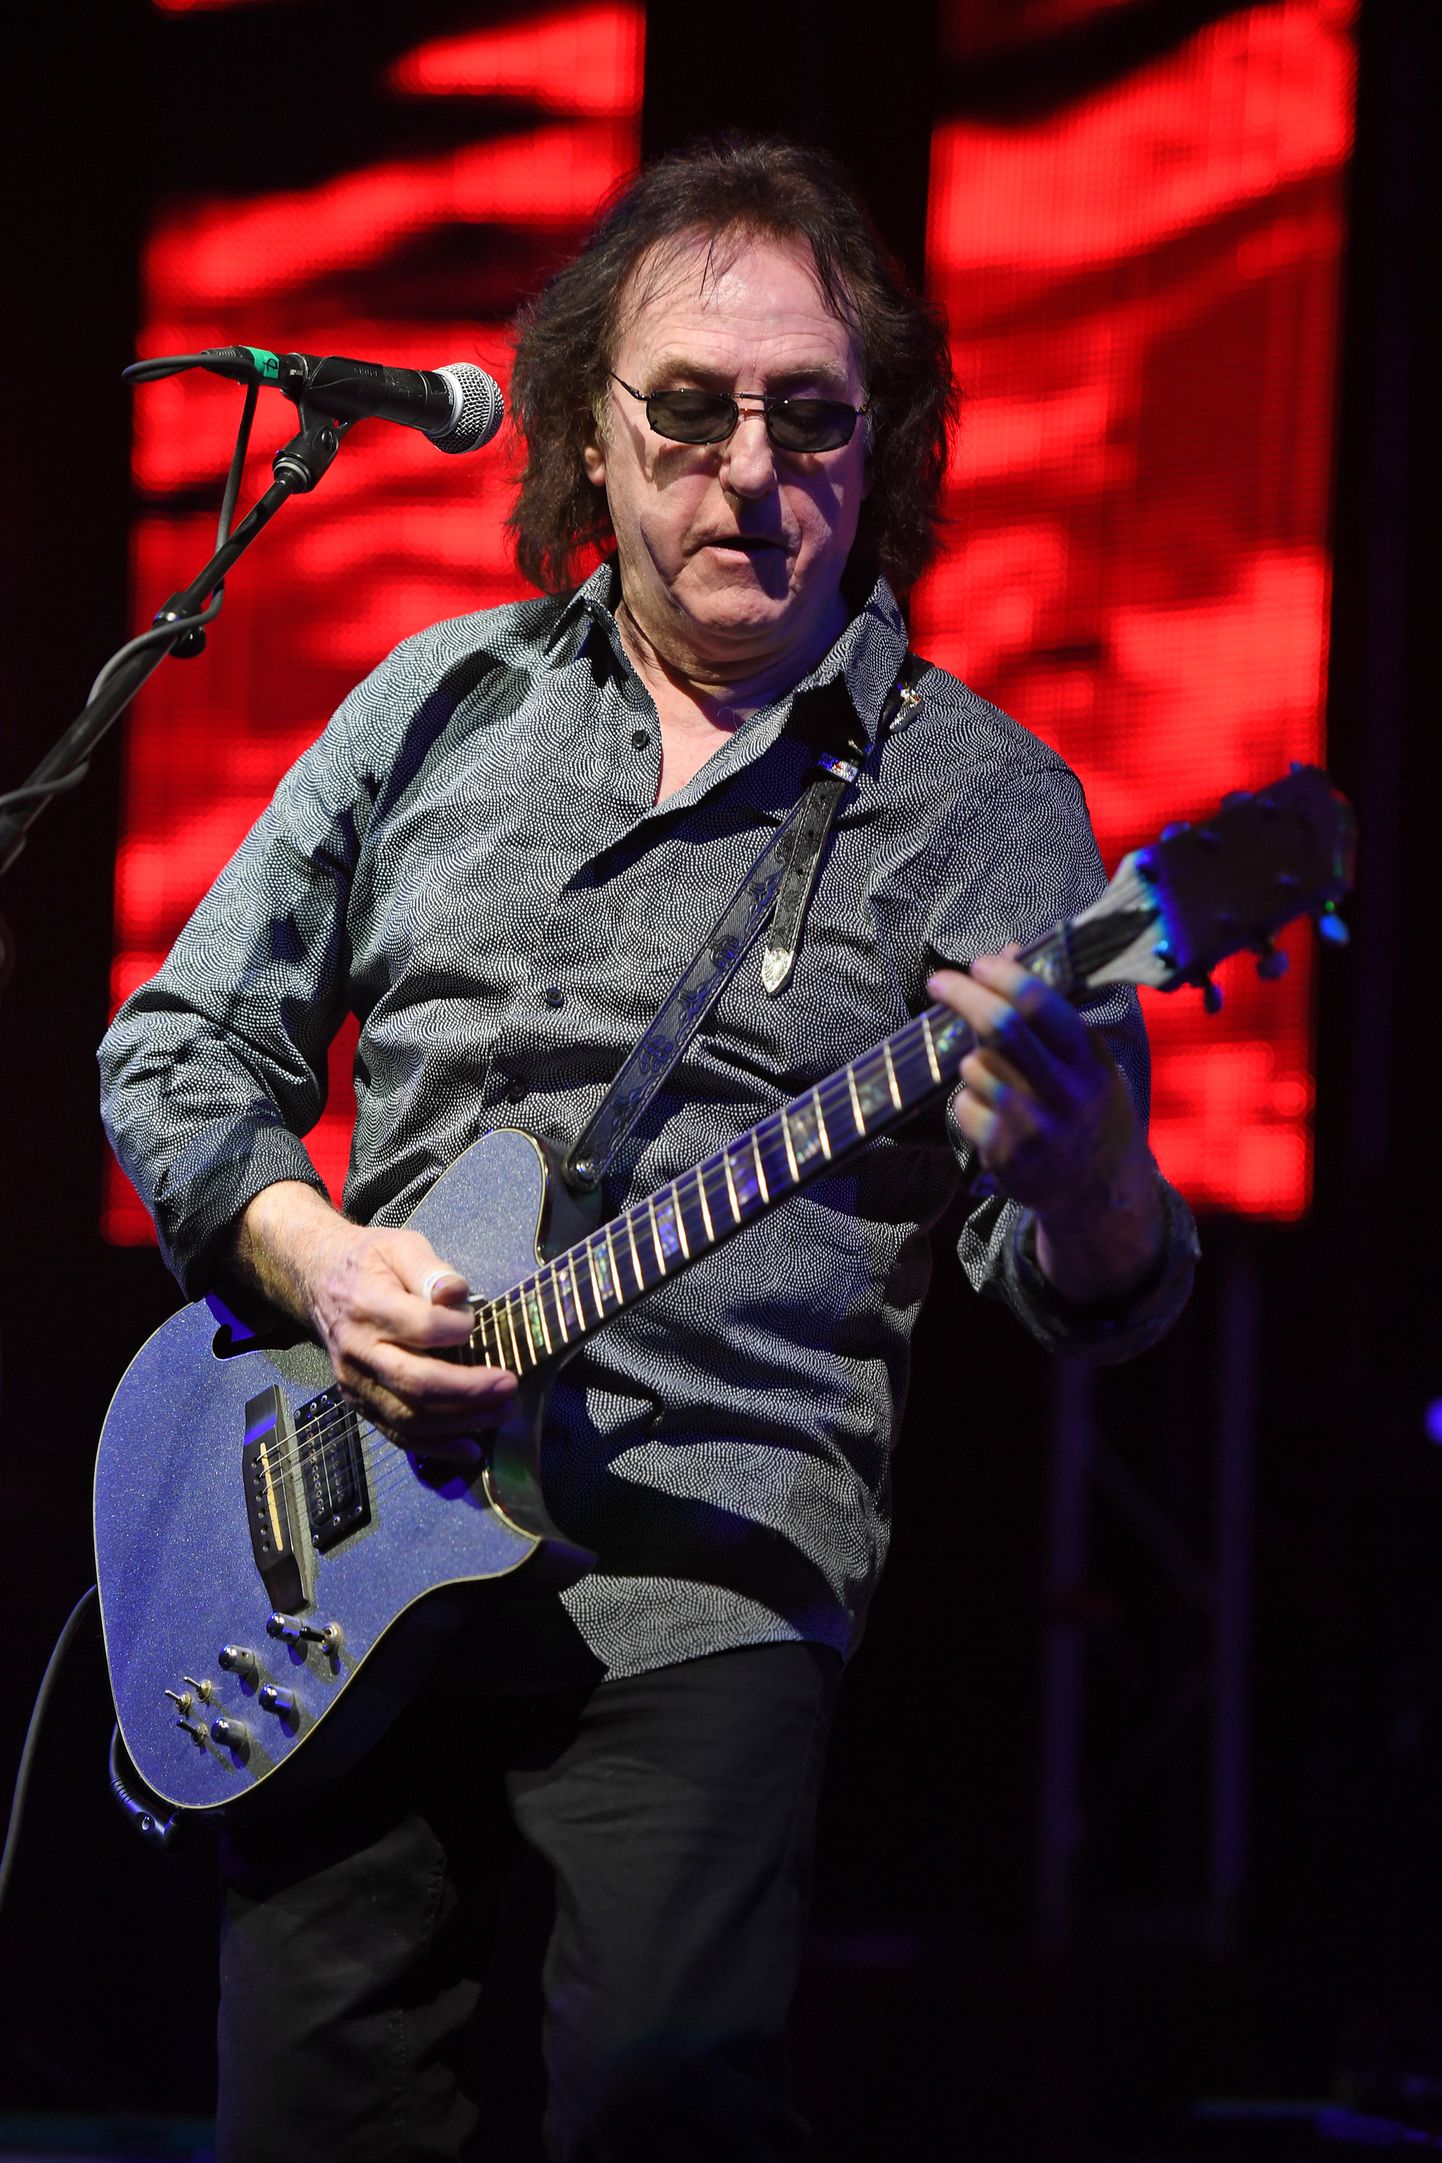 Denny Laine pani aluse bändile Moody Blues ning ühines aastaid hiljem Paul McCartney bändiga Wings.